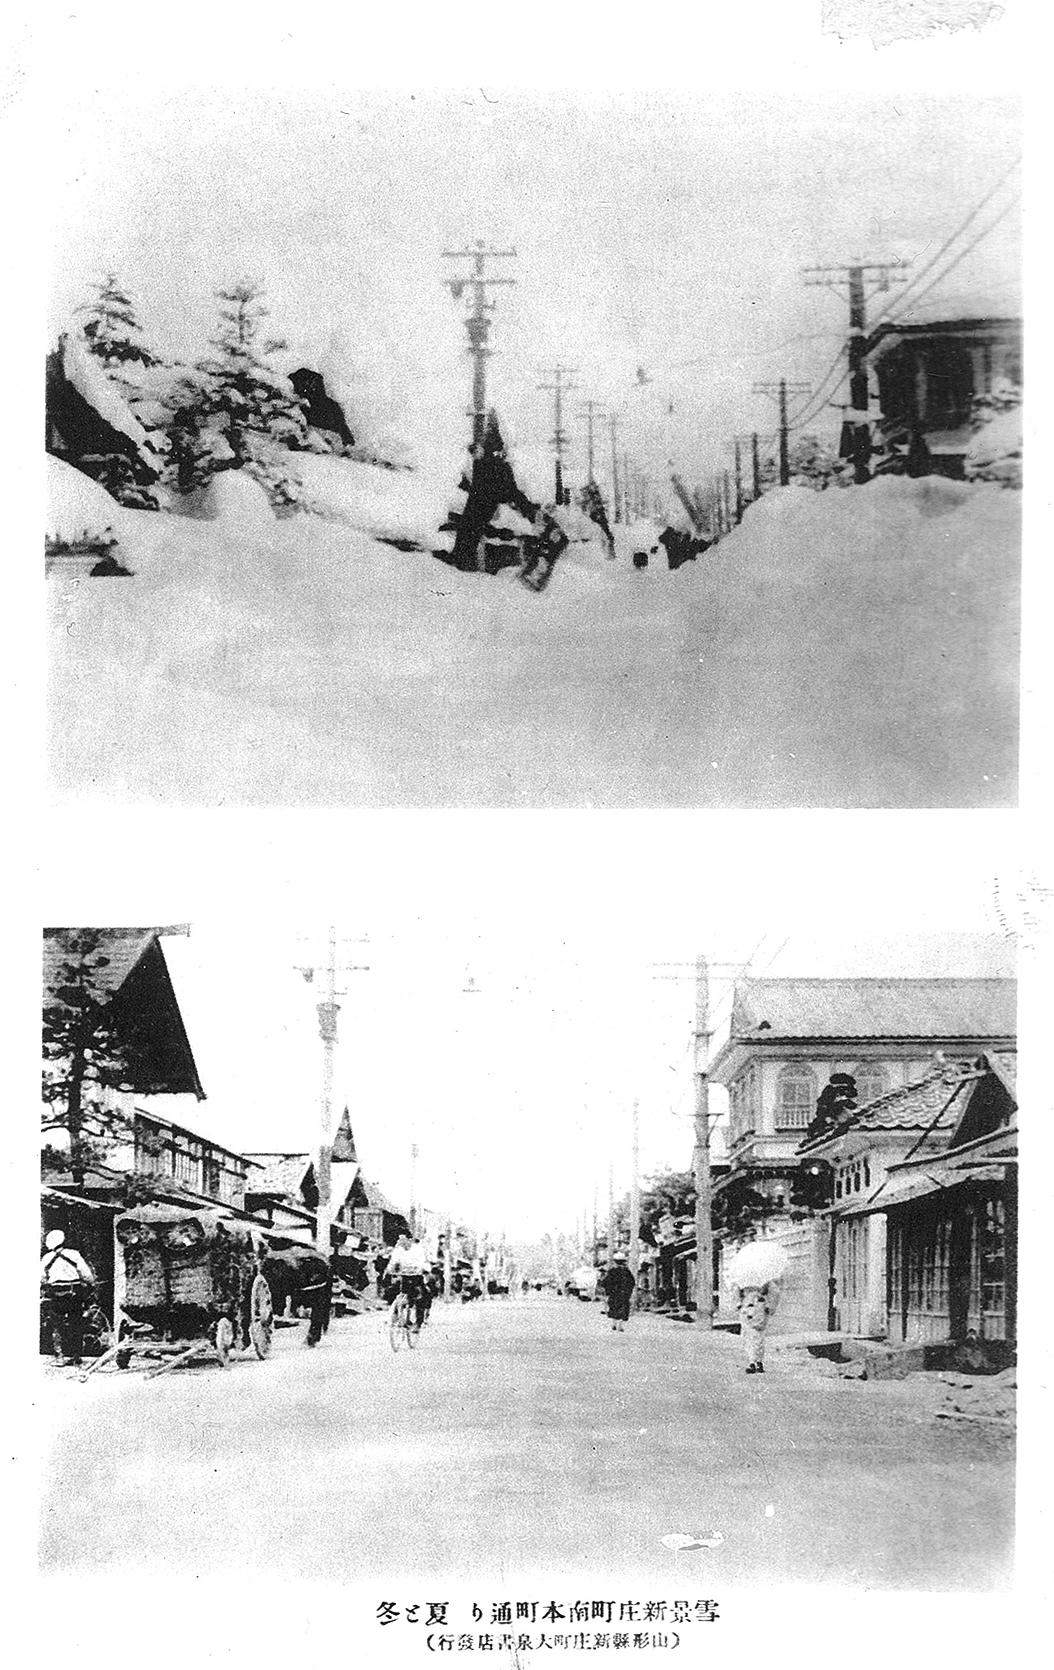 雪景南本町通りの夏と冬